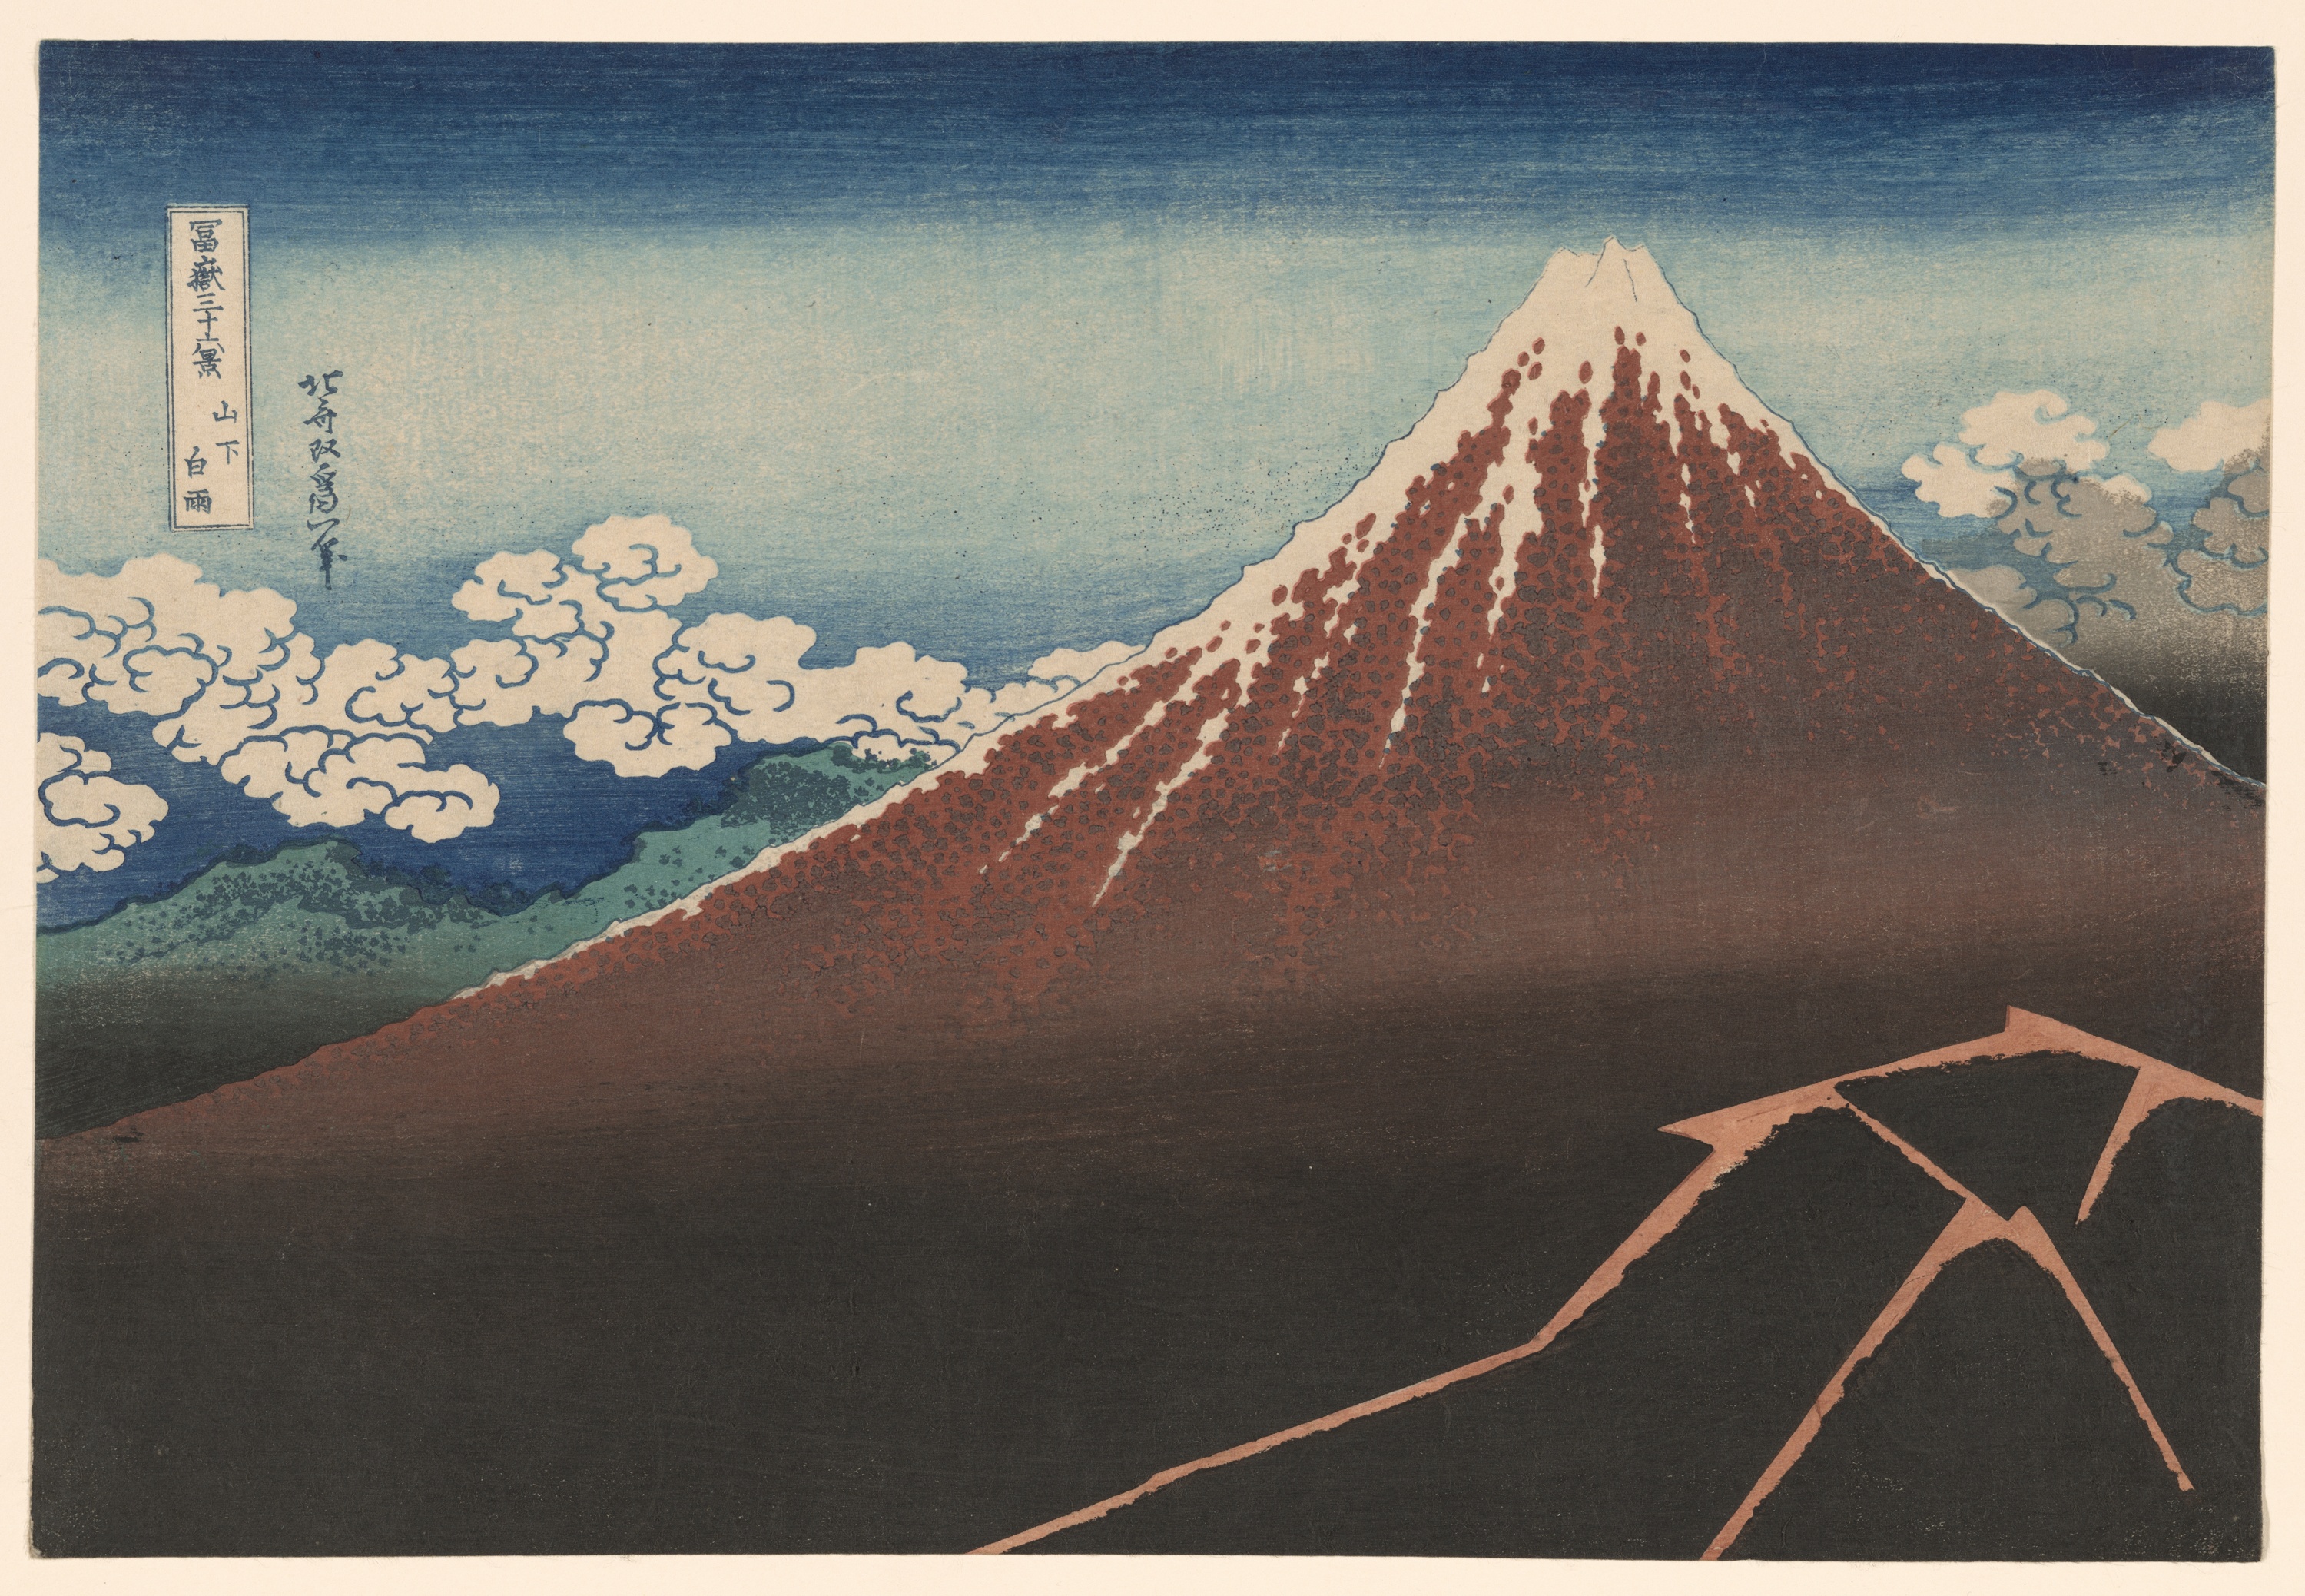 Burza poniżej szczytu by Katsushika Hokusai - ok. 1830–1832 - 25,72 × 38 cm 